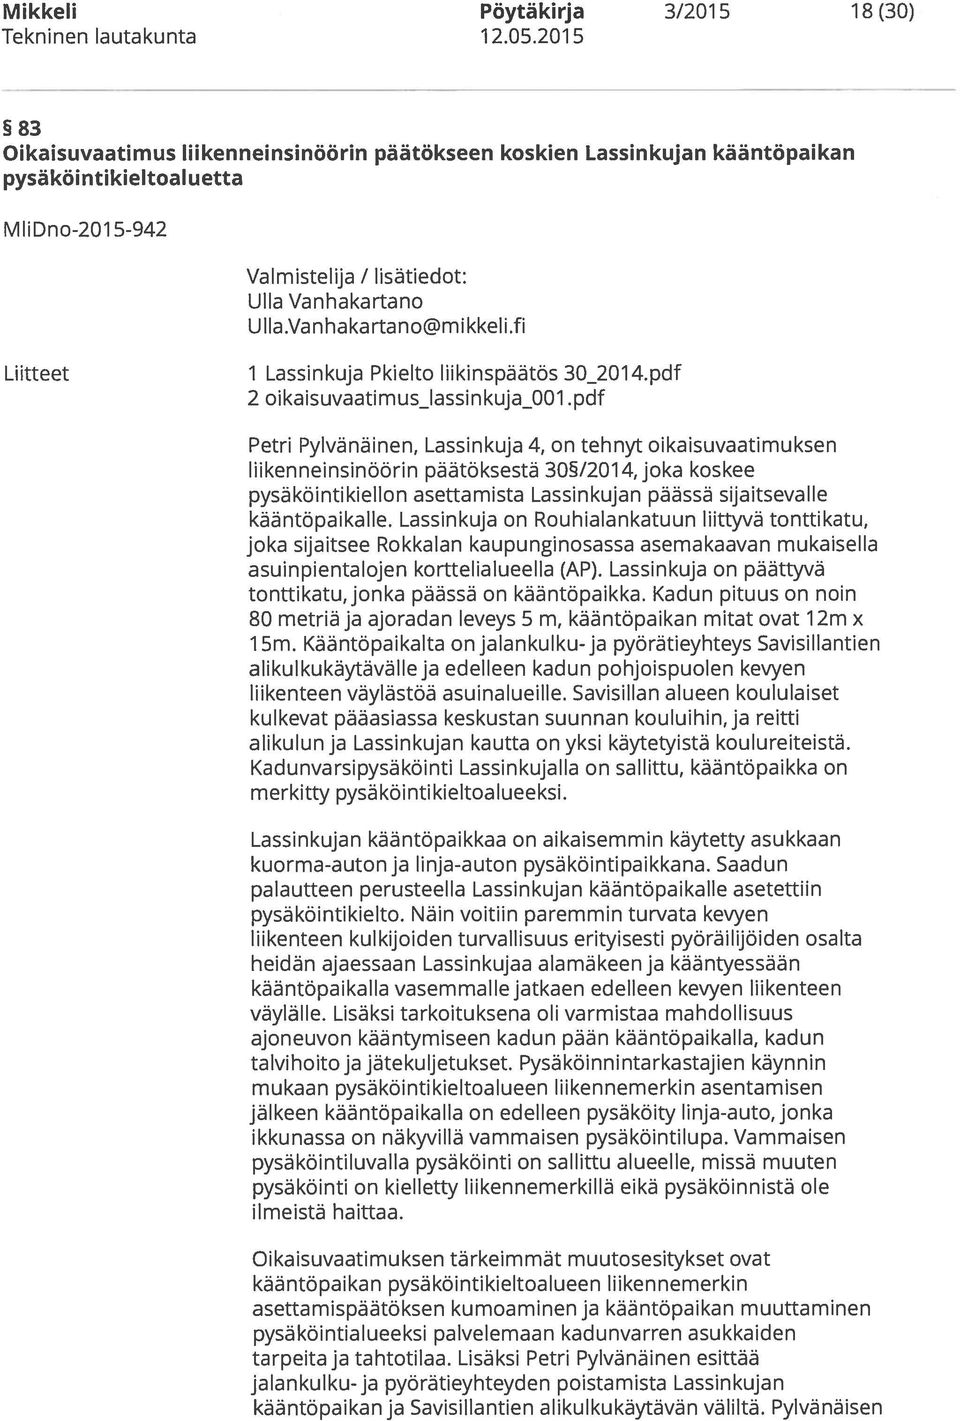 pdf Petri Pylvänäinen, Lassinkuja 4, on tehnyt oikaisuvaatimuksen liikenneinsinöörin päätöksestä 30/201 4, joka koskee pysäköintikiellon asettamista Lassinkujan päässä sijaitsevalle kääntöpaikalle.